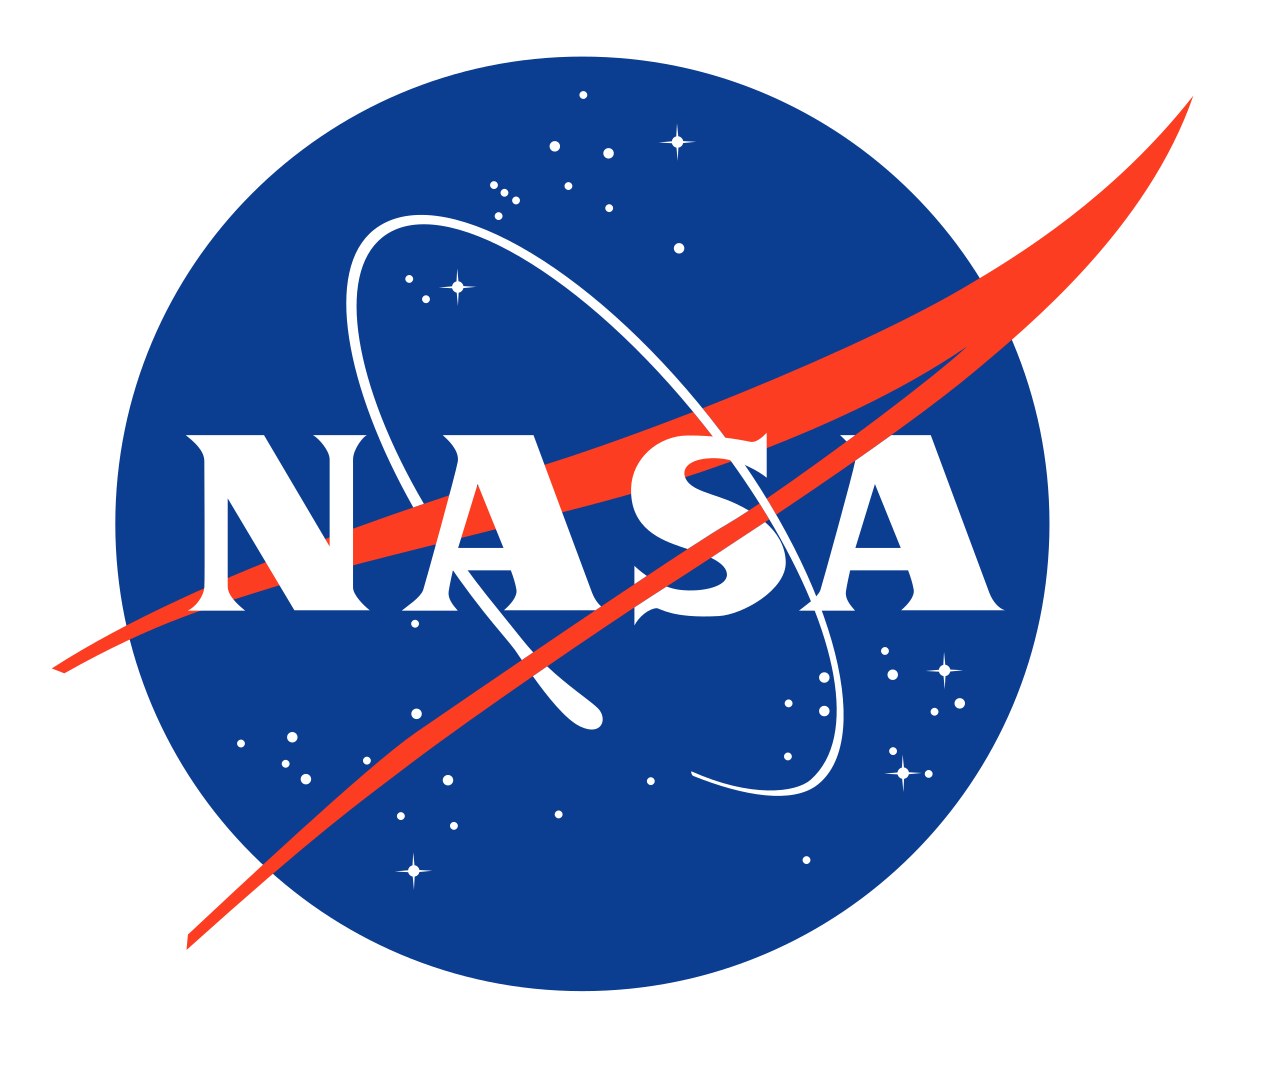 NASA brings back the Worm